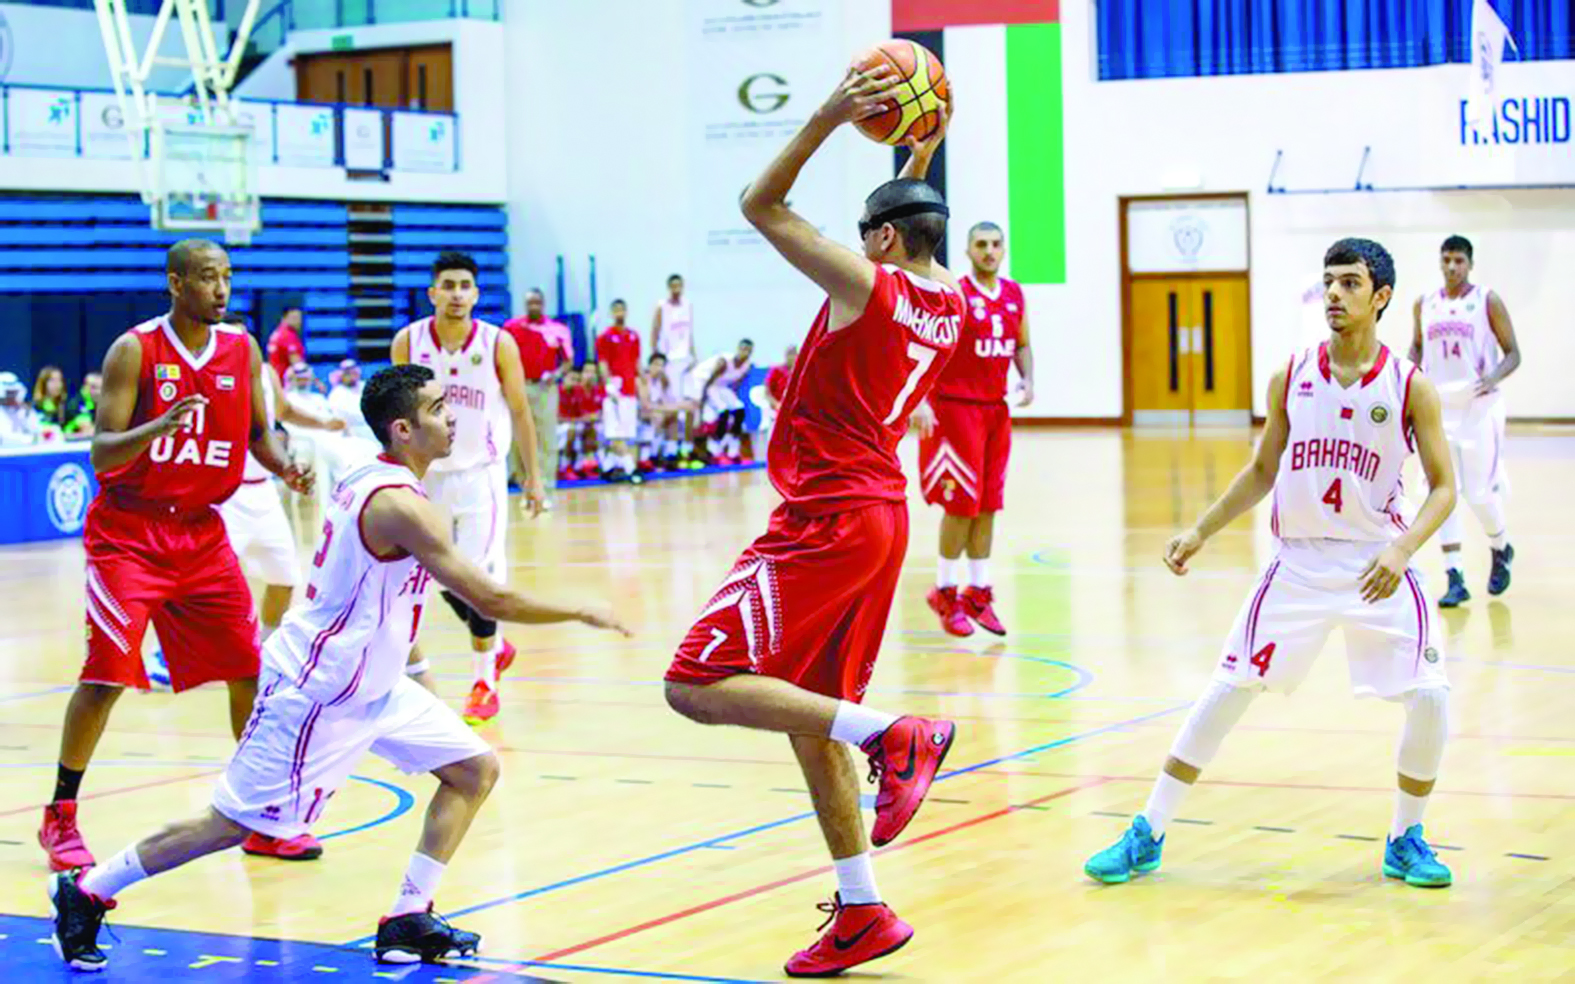 يناقش موعد إقامة بطولة الخليج للشباب

اتحاد السلة يستضيف اجتماع اللجنـة التنظيميـة لدول الخليج